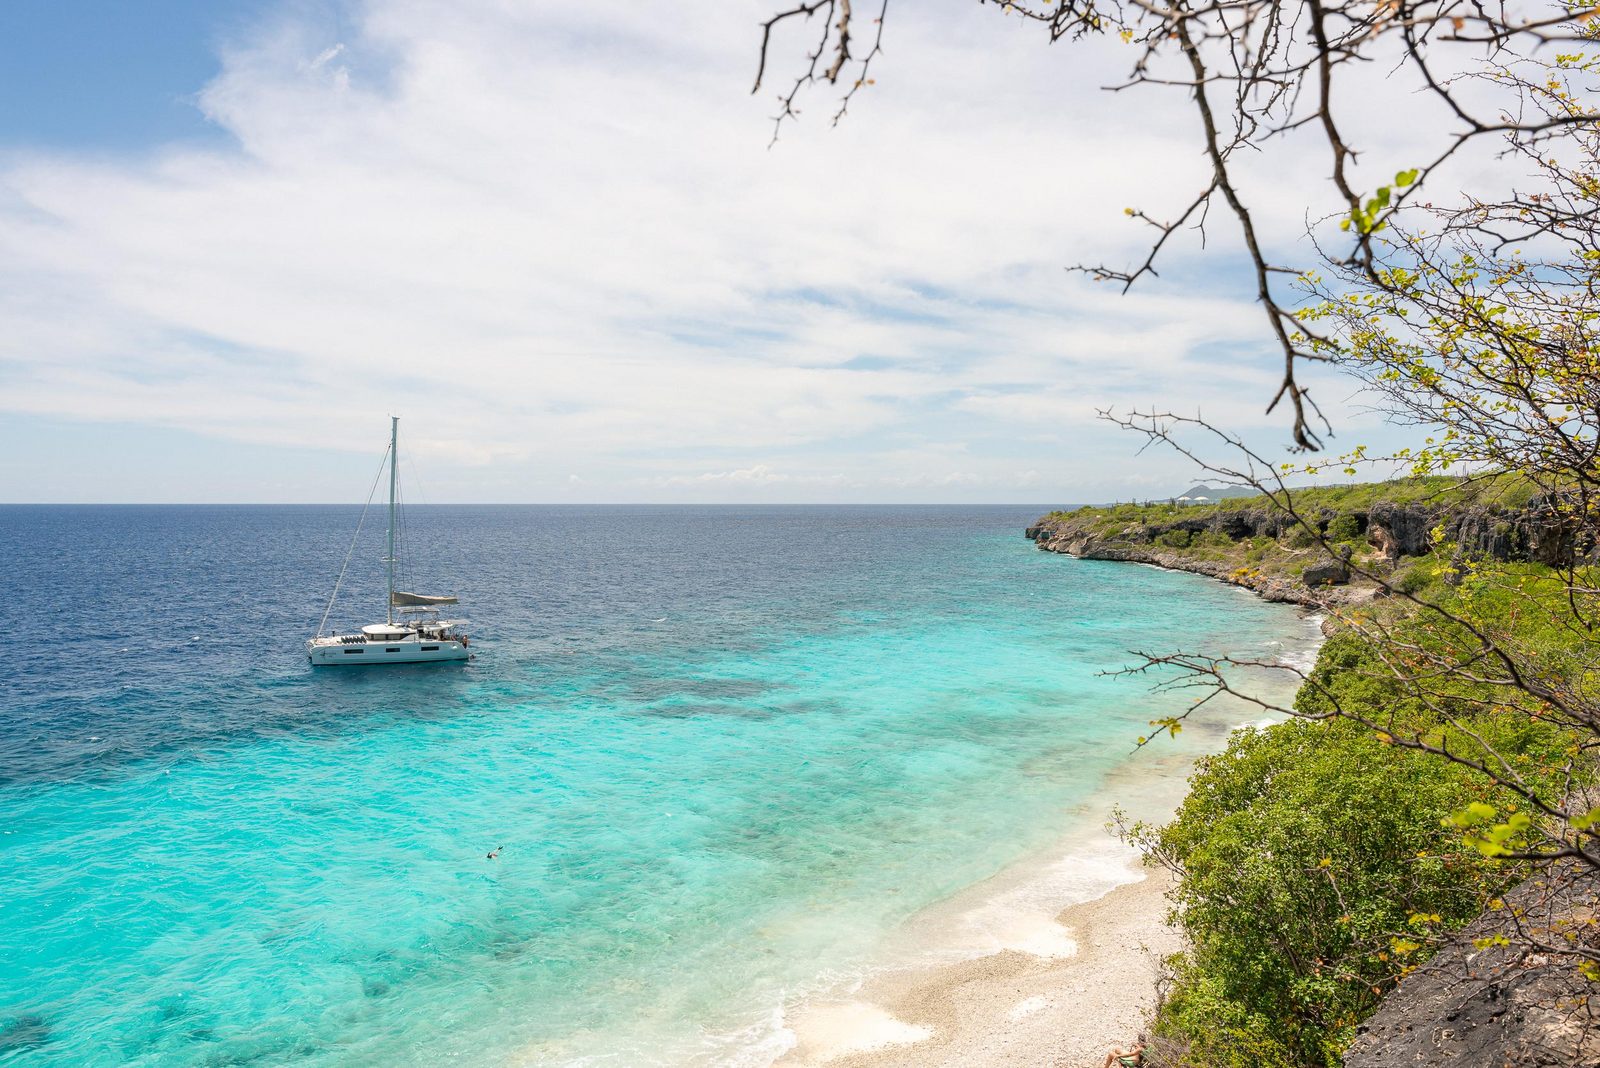 Bonaire é a ilha perfeita para desfrutar das suas férias, incluindo para uma estadia com as crianças. Afinal de contas, o Resort Bonaire é um resort adequado para crianças. Saiba mais sobre o nosso resort.